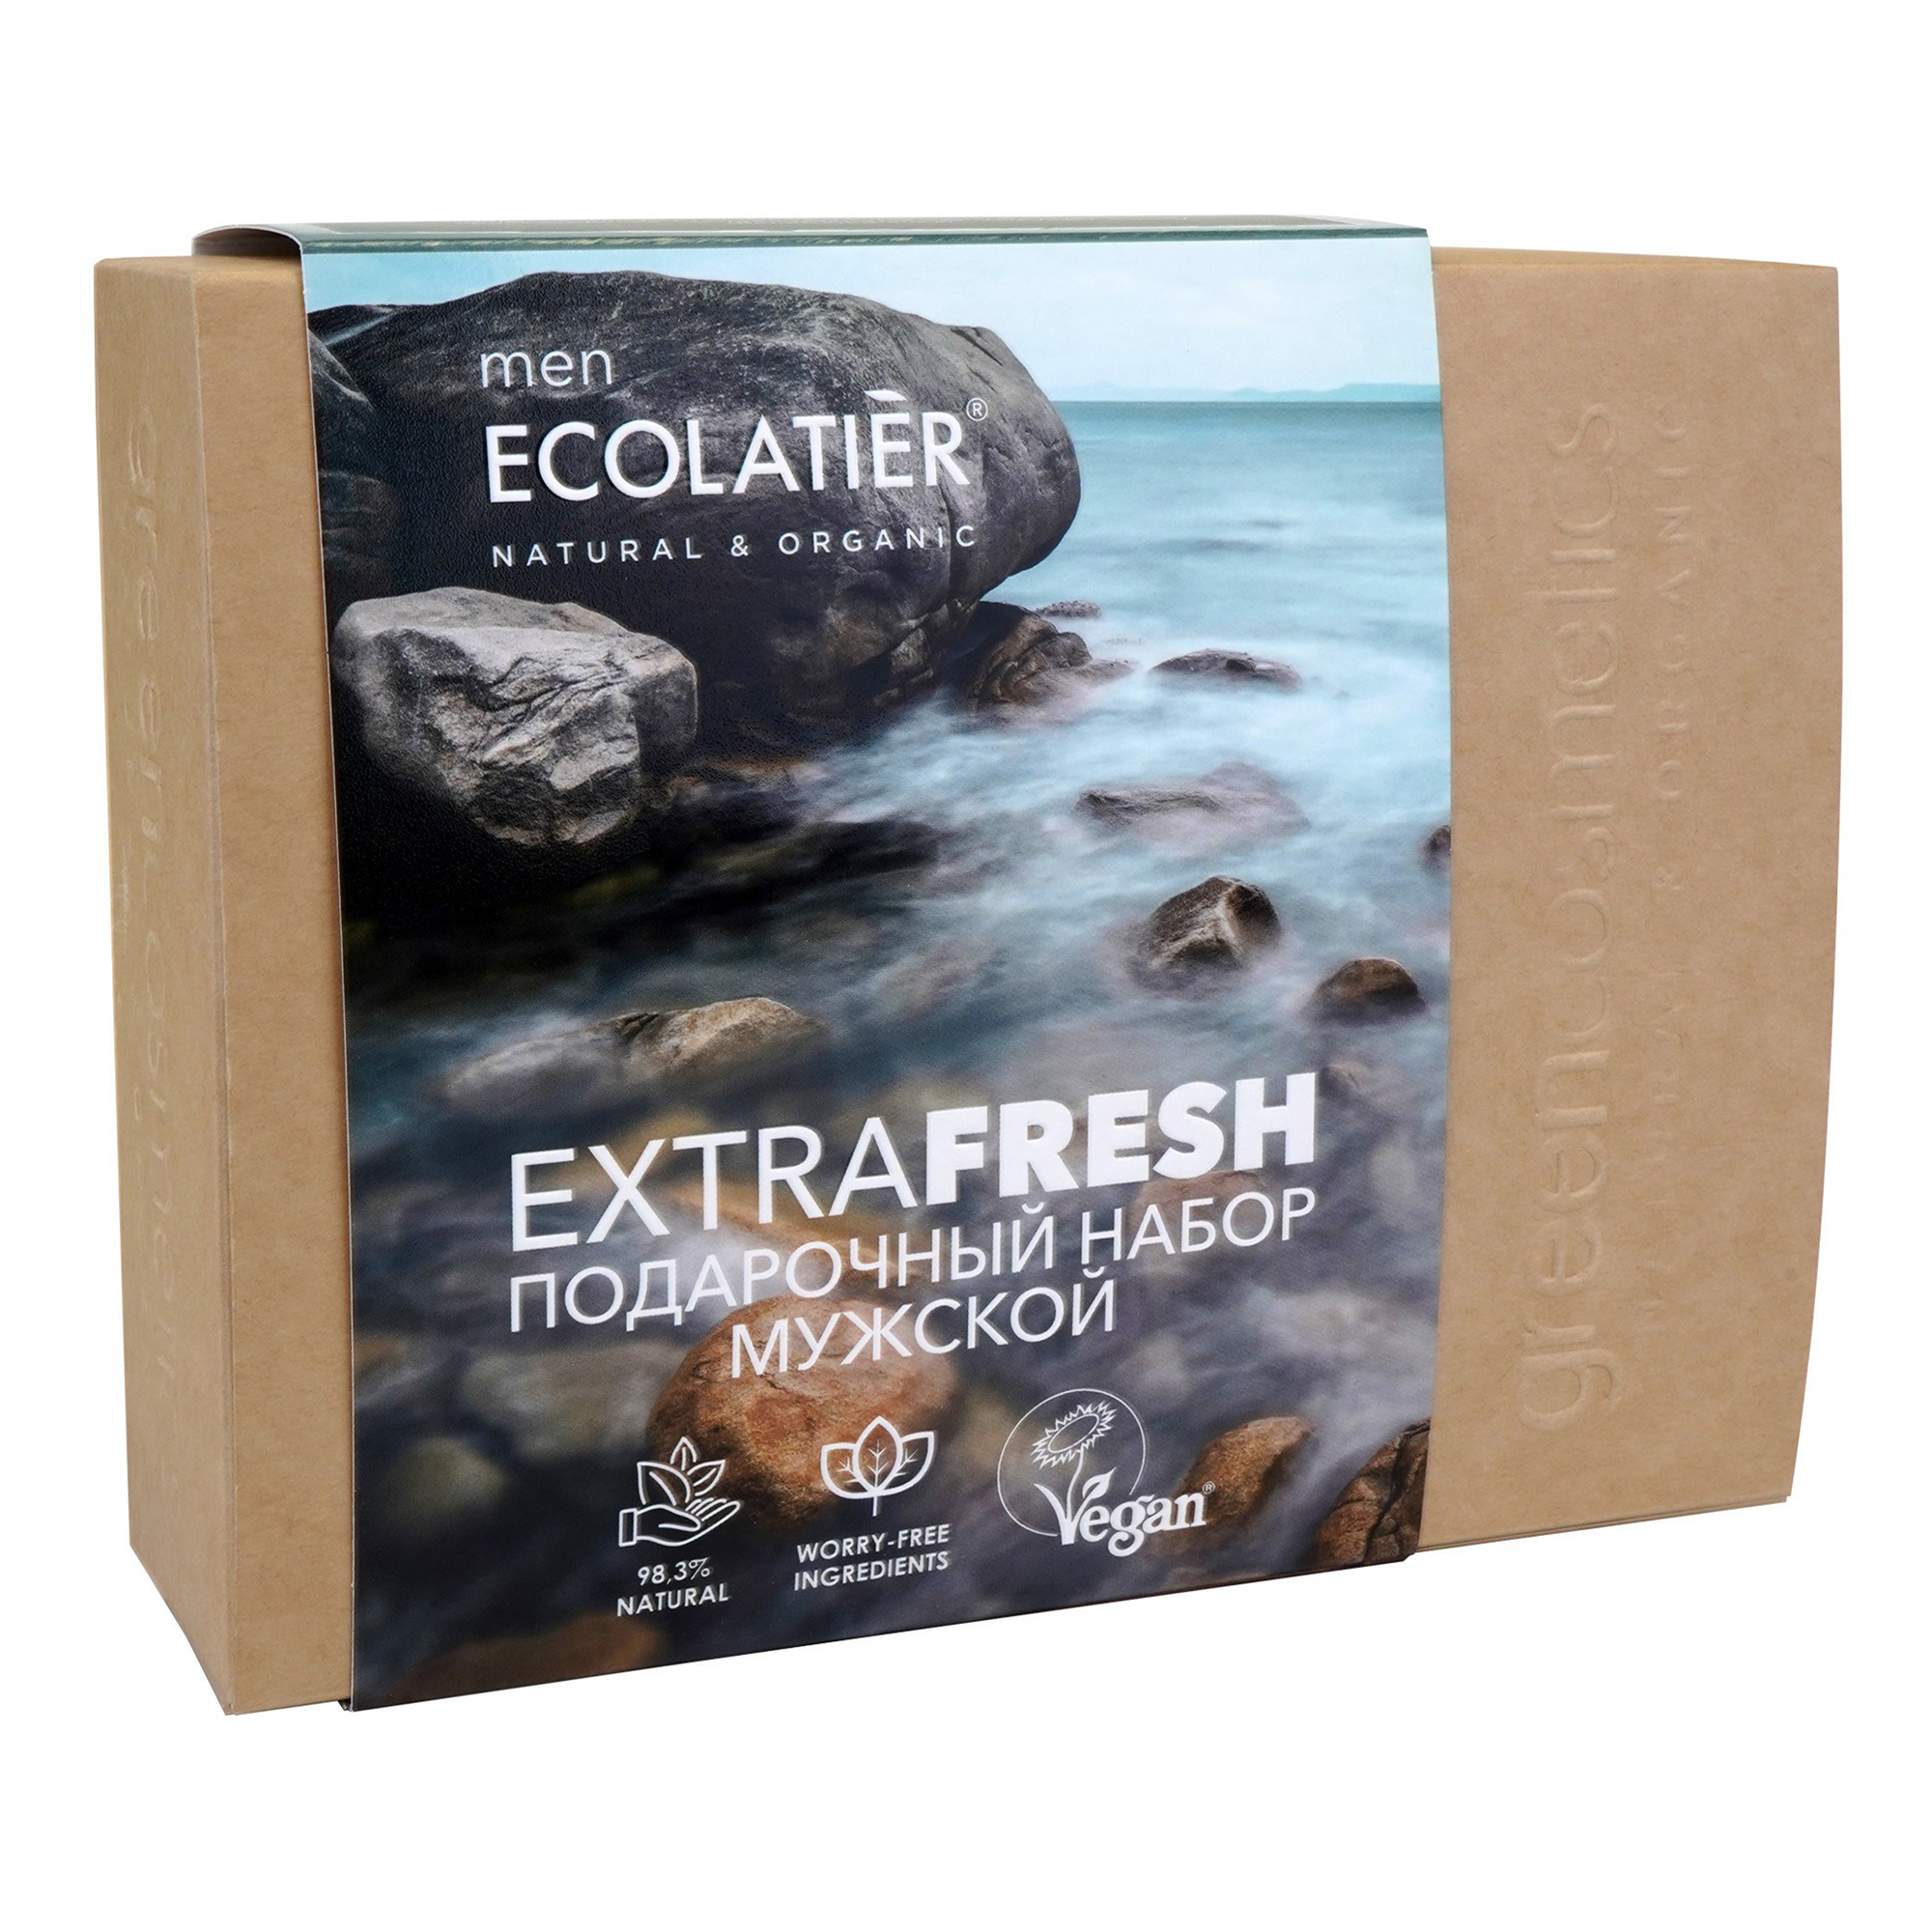 Купить набор средств для тела Ecolatier Extra Fresh for Men мужской 2 предмета, цены на Мегамаркет | Артикул: 100044465406